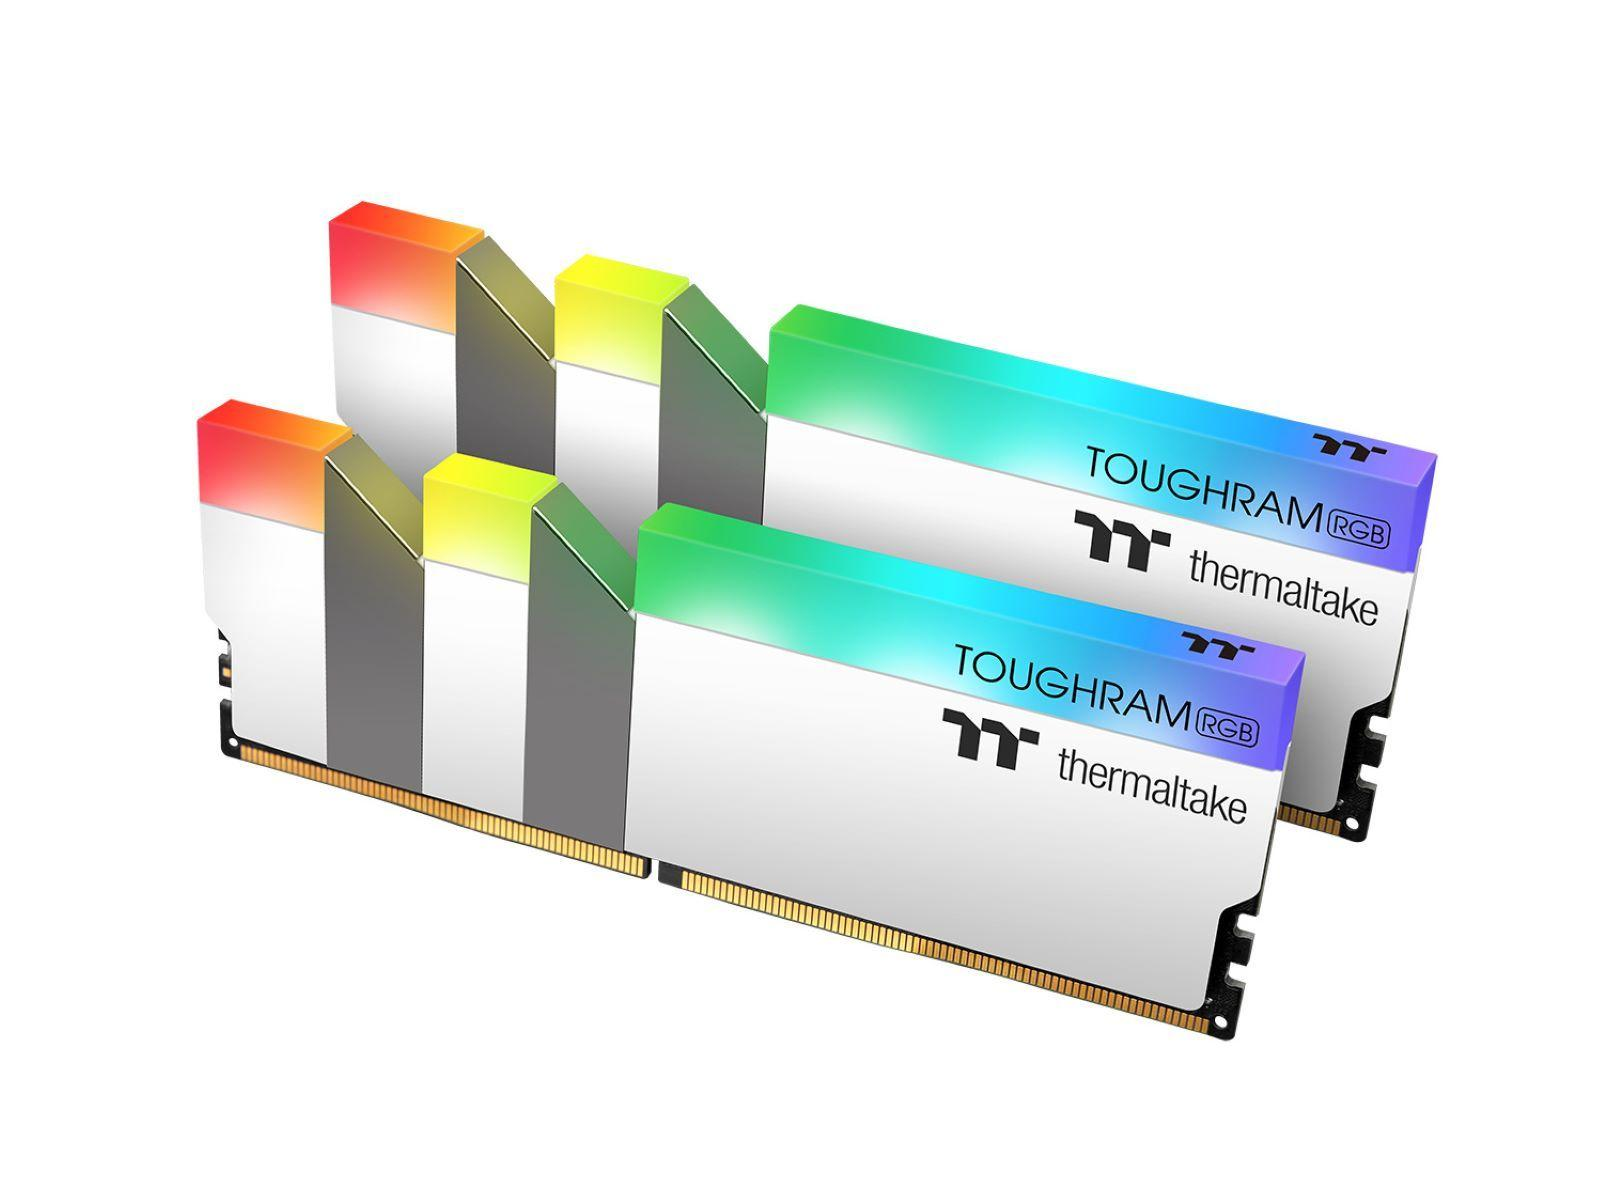 Arbeitsspeicher WHITE THERMALTAKE GB TOUGHRAM 32 DDR4 RGB